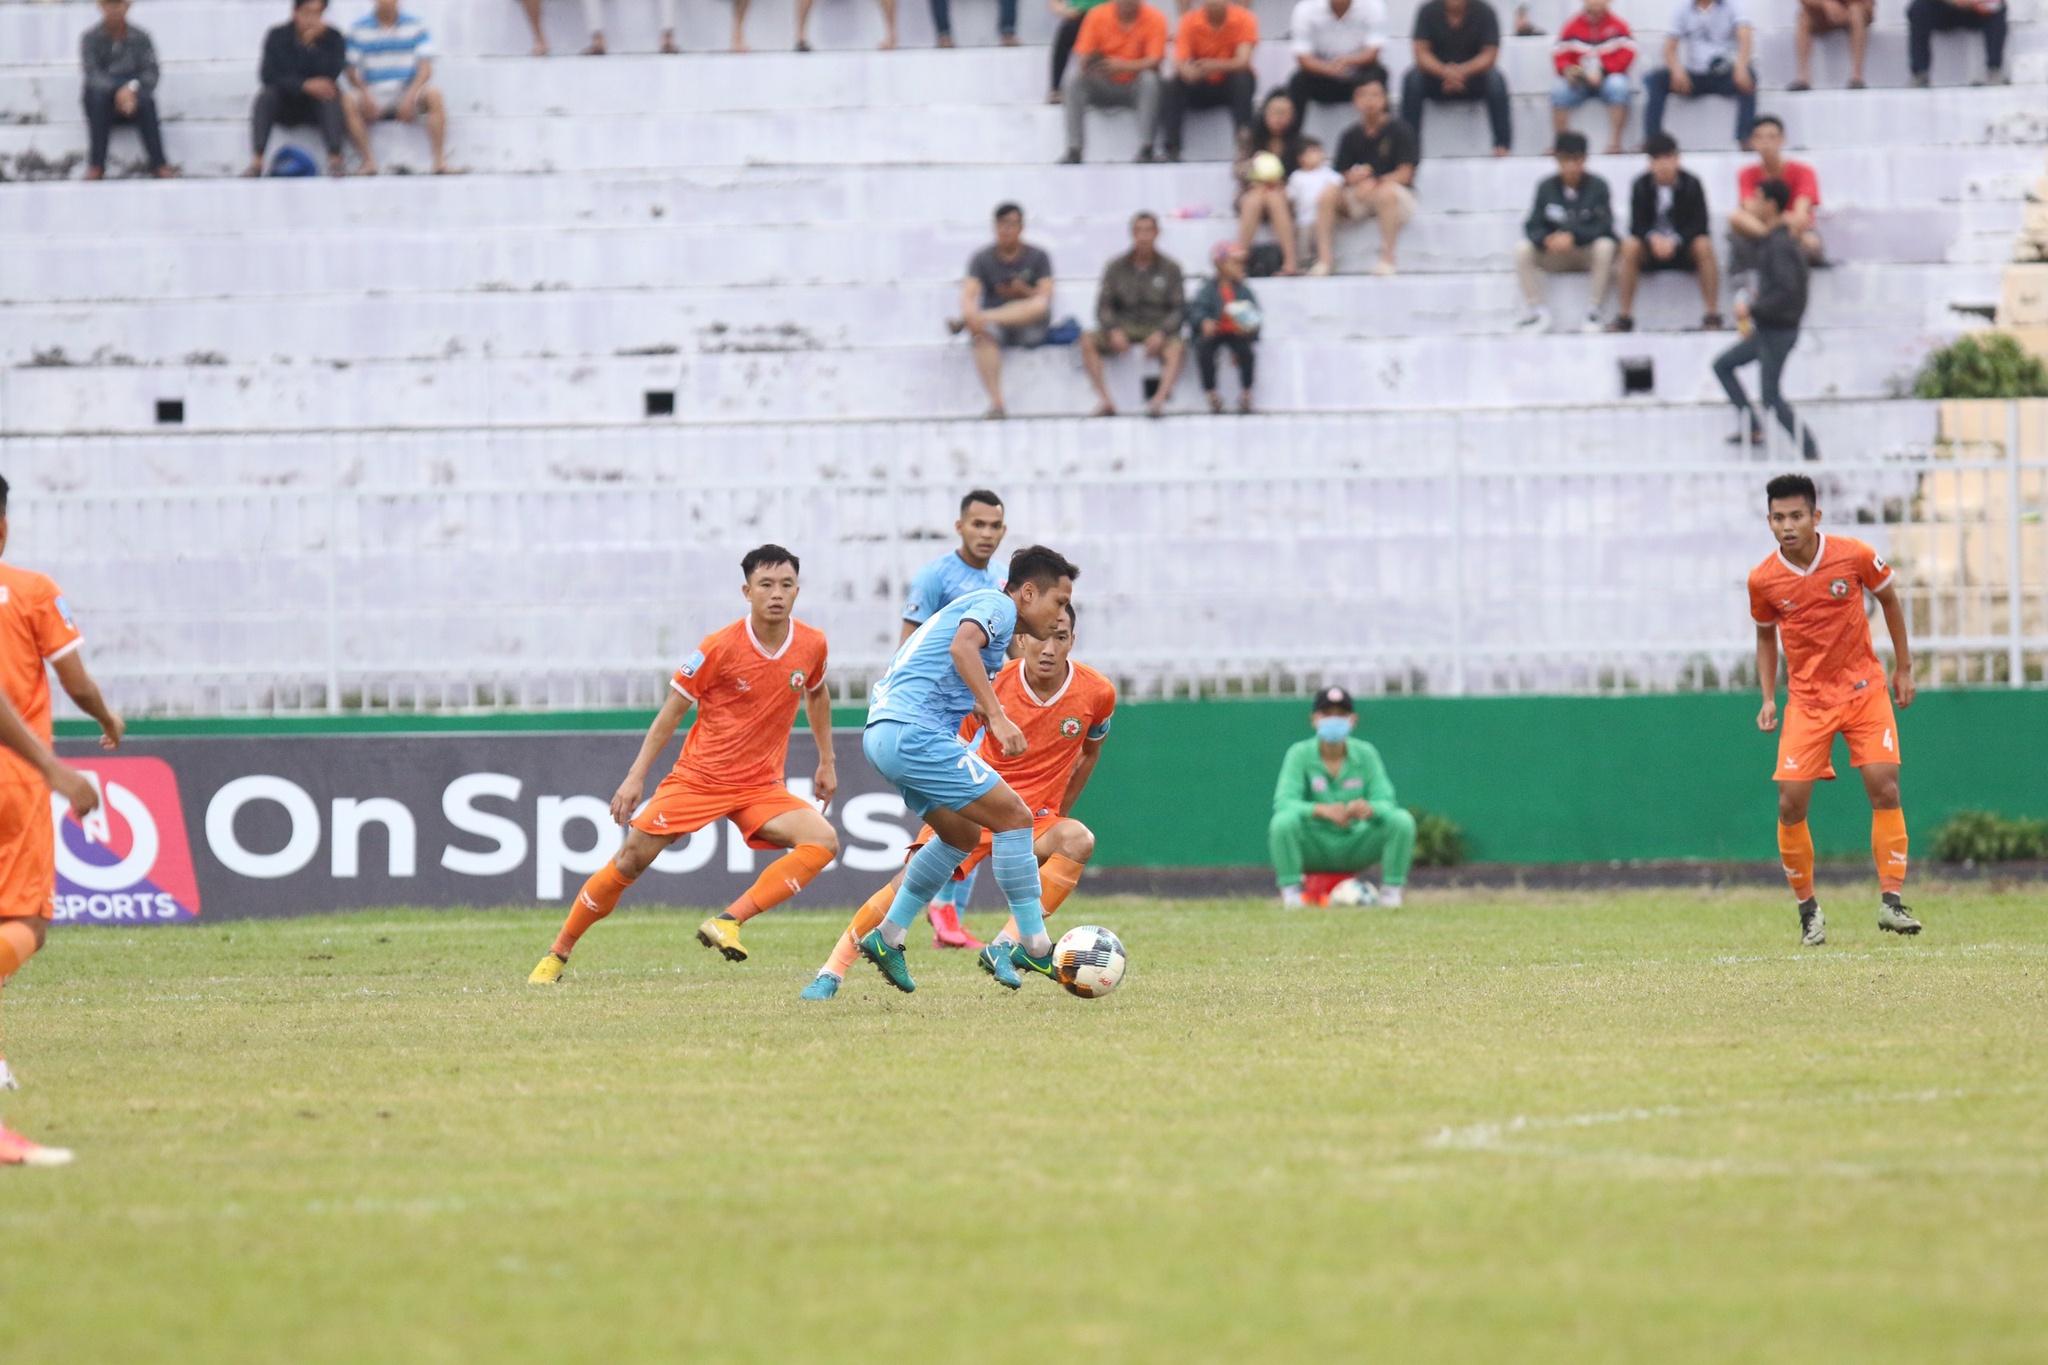 Kết quả suất lên hạng V-League: Chúc mừng CLB Bình Định, tiếc cho Bà Rịa - Vũng Tàu! - ảnh 21